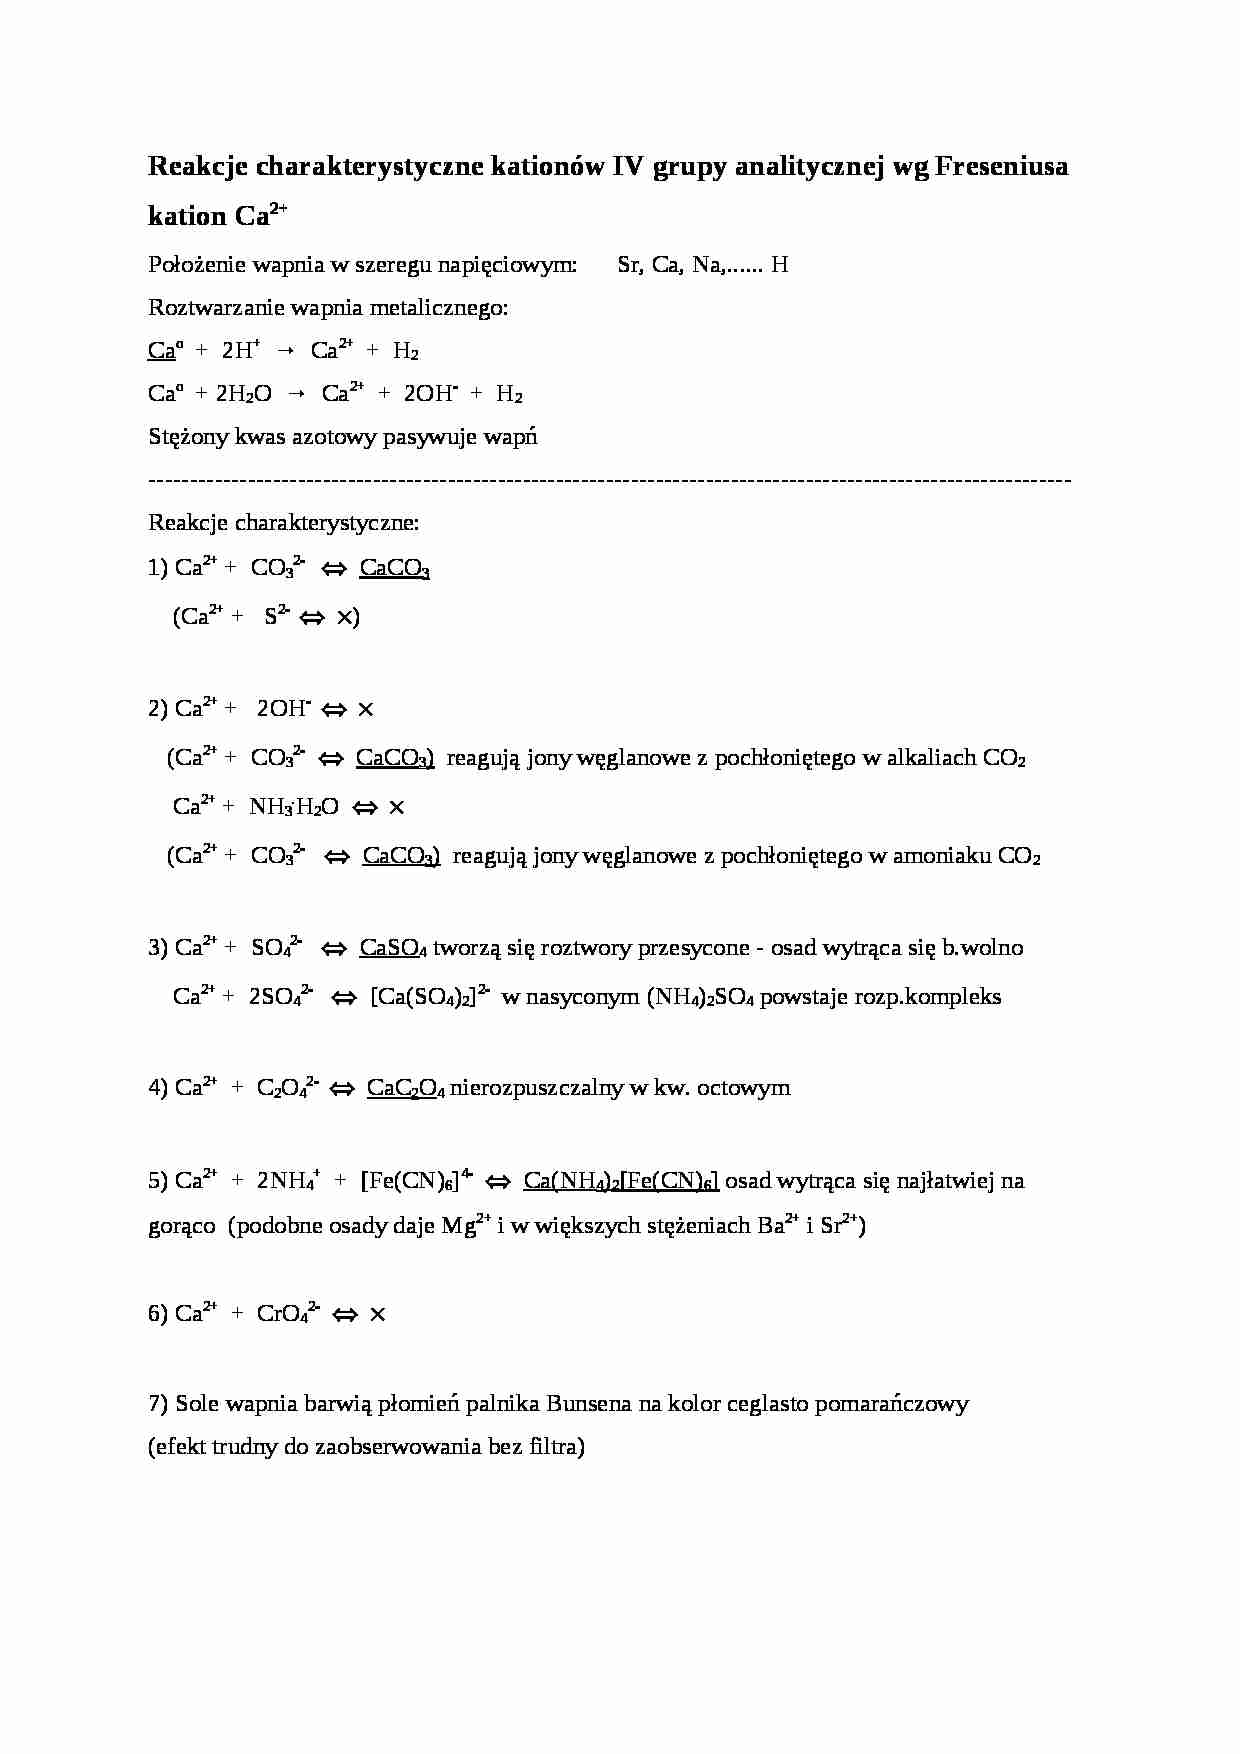 Reakcje charakterystyczne kationów IV grupy analitycznej wg Freseniusa - strona 1